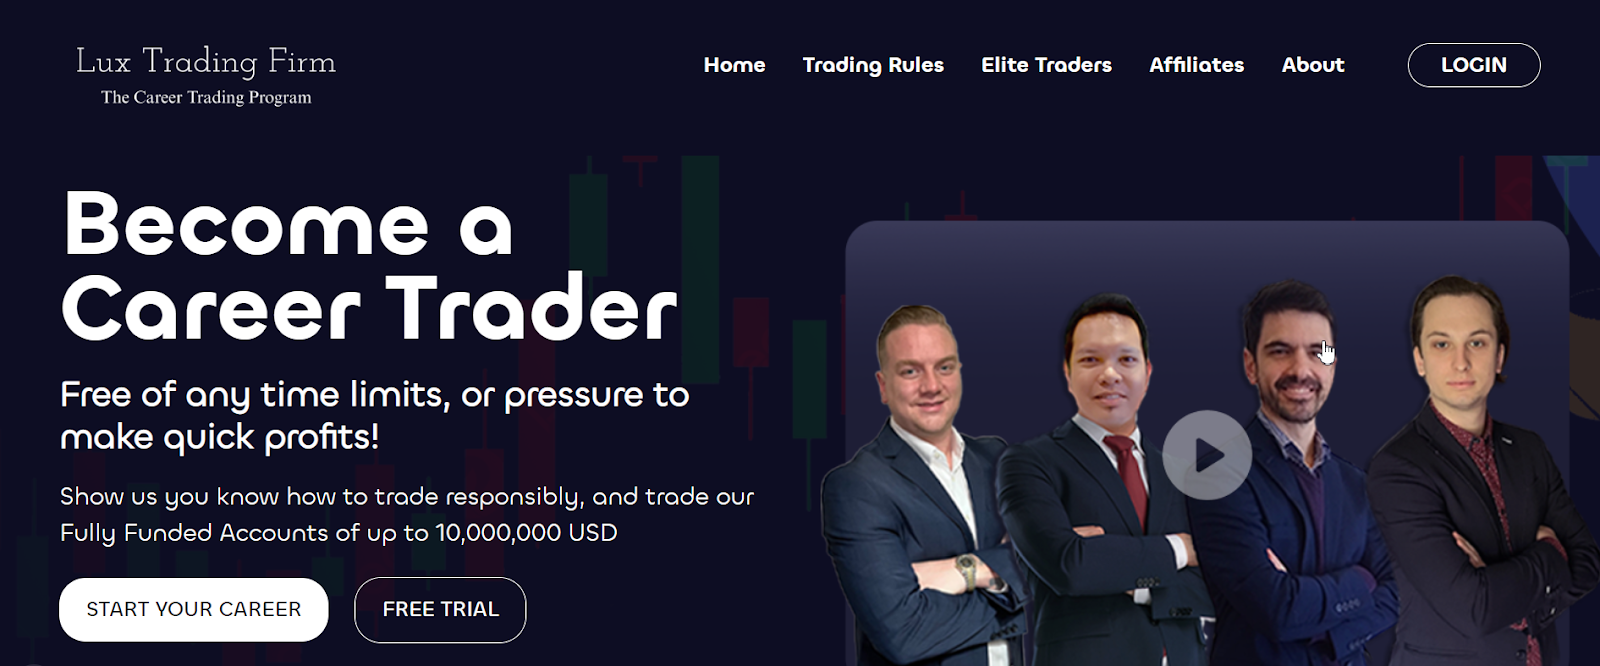 Reseña de Lux Trading Firm - Prueba gratuita